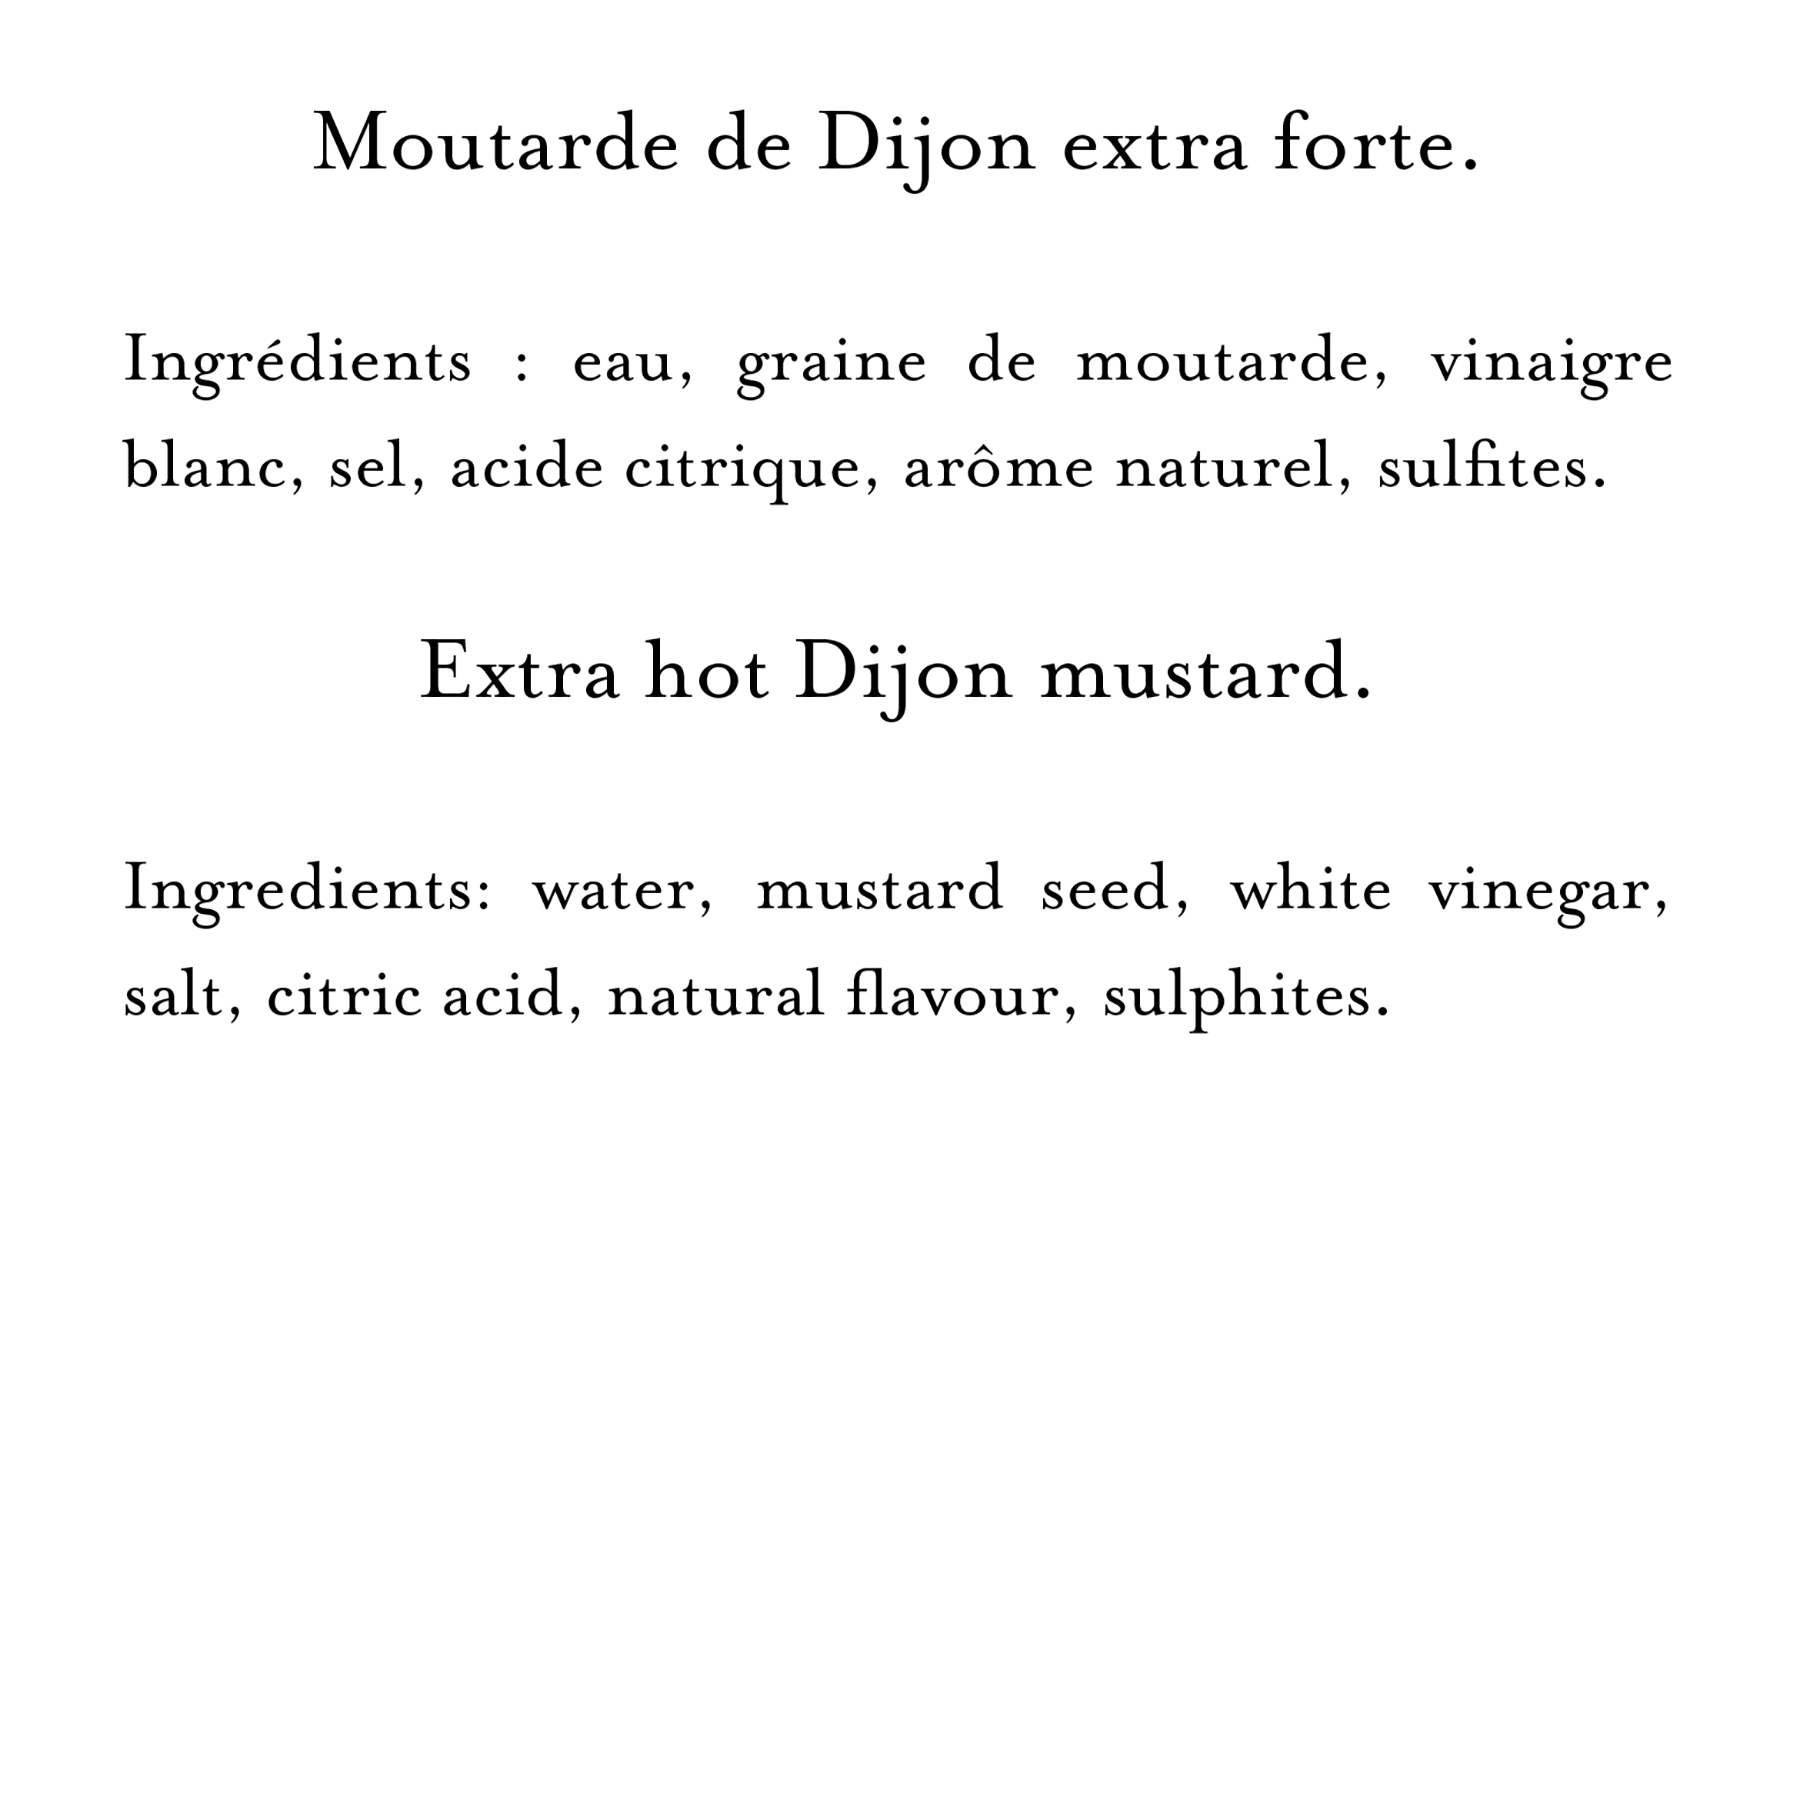 Ingredients (23)